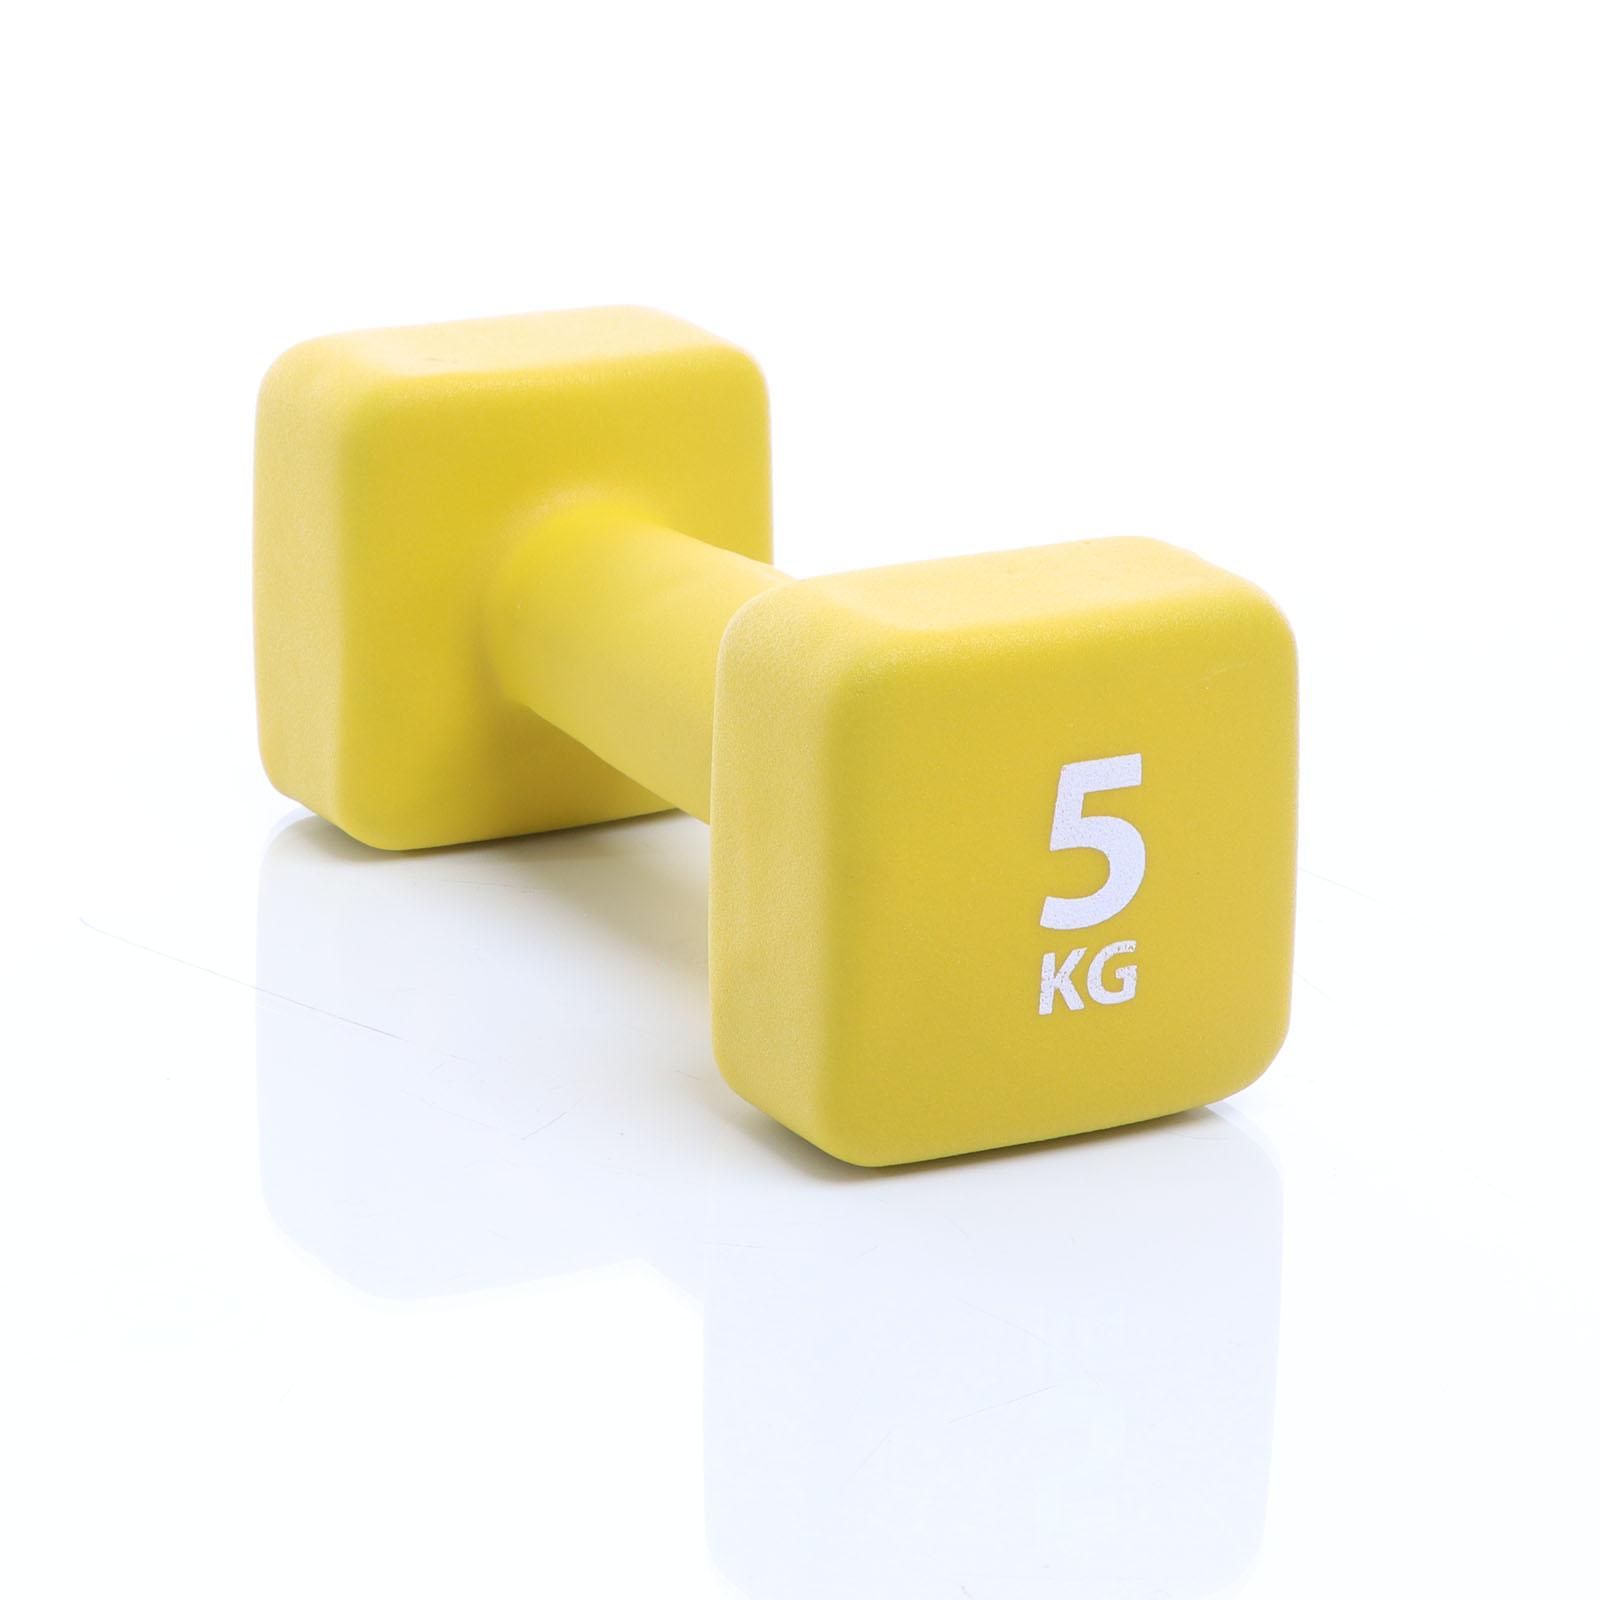 LUXTRI Neopren Kurzhantel 5 kg gelb Hantel mit rutschfestem Griff